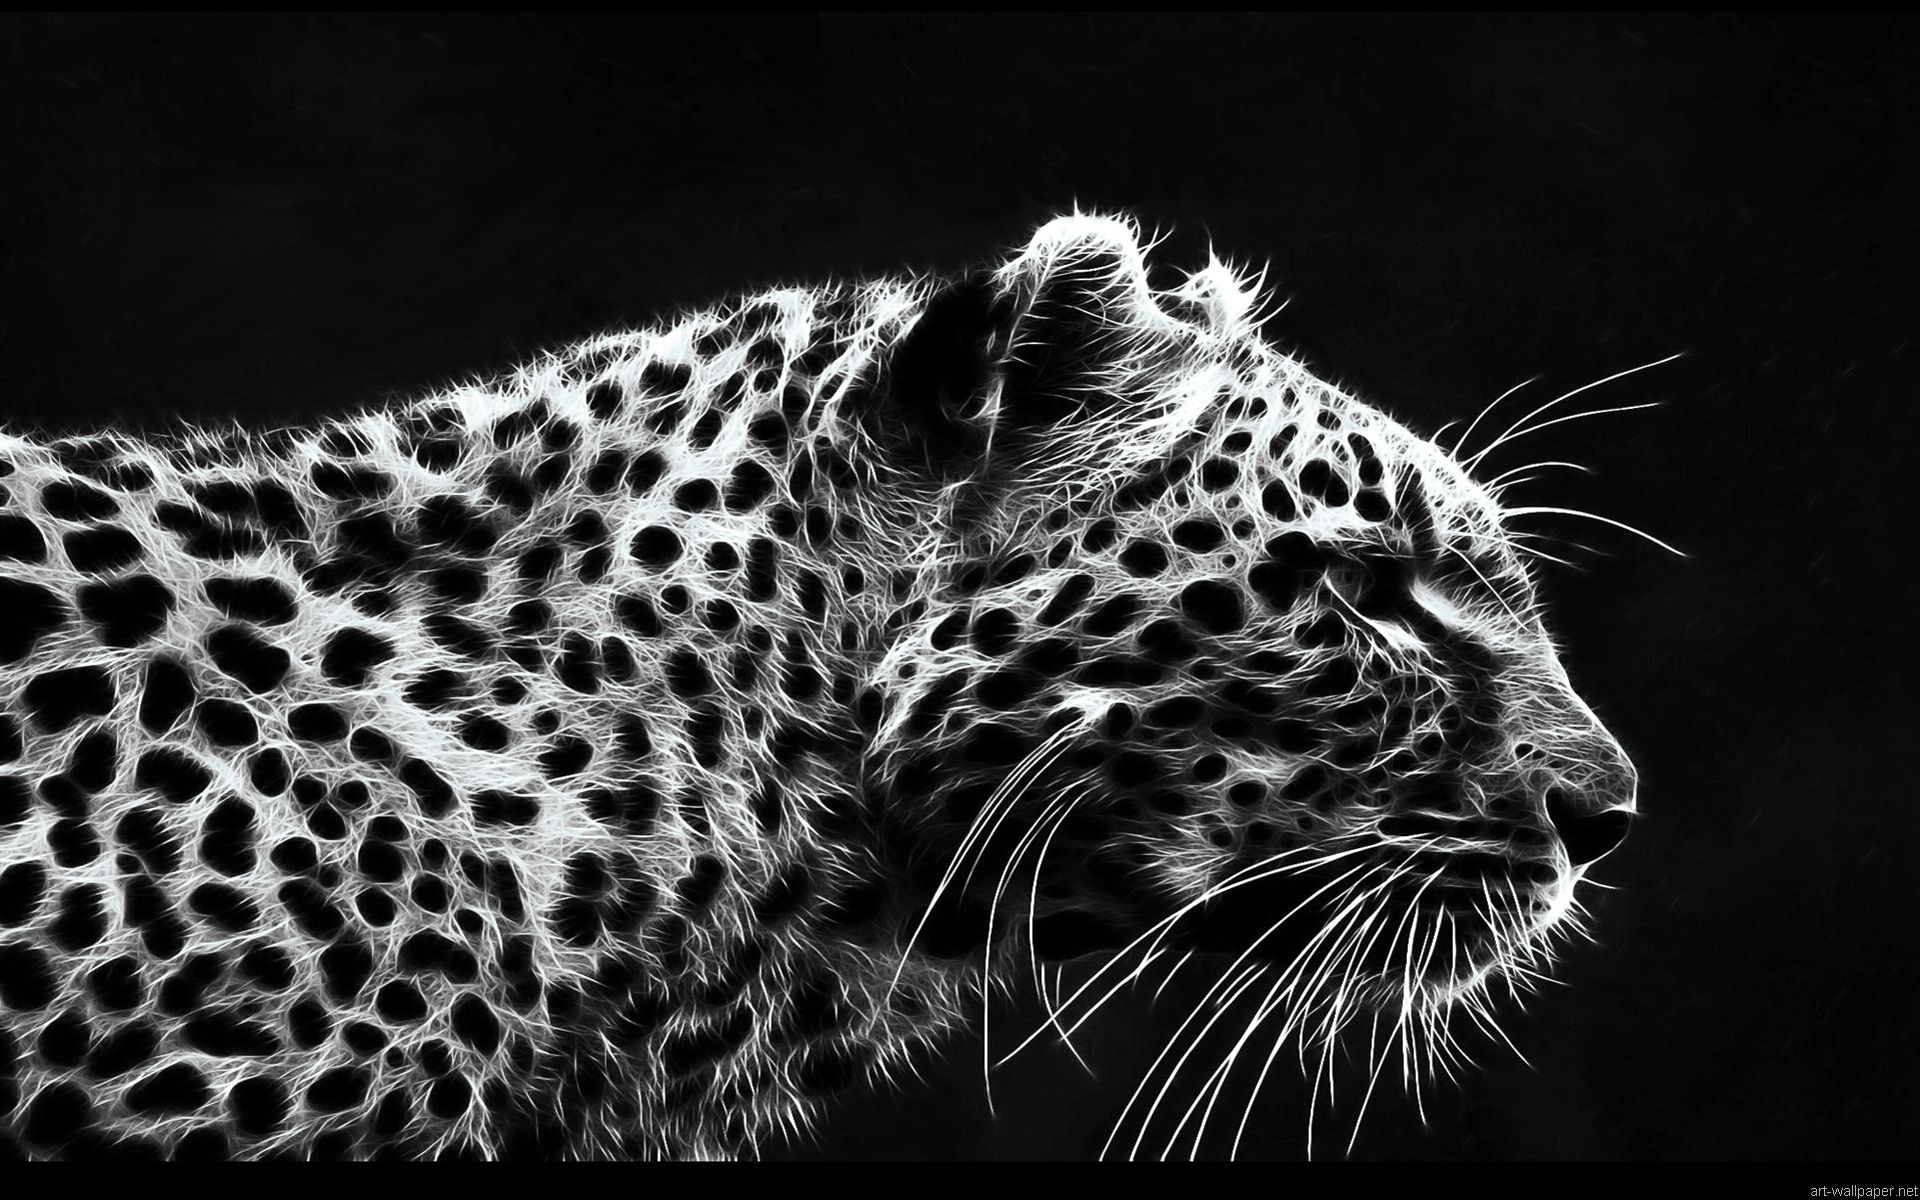 والپیپر سیاه سفید از یوز پلنگ کمیاب و در حال انقراض